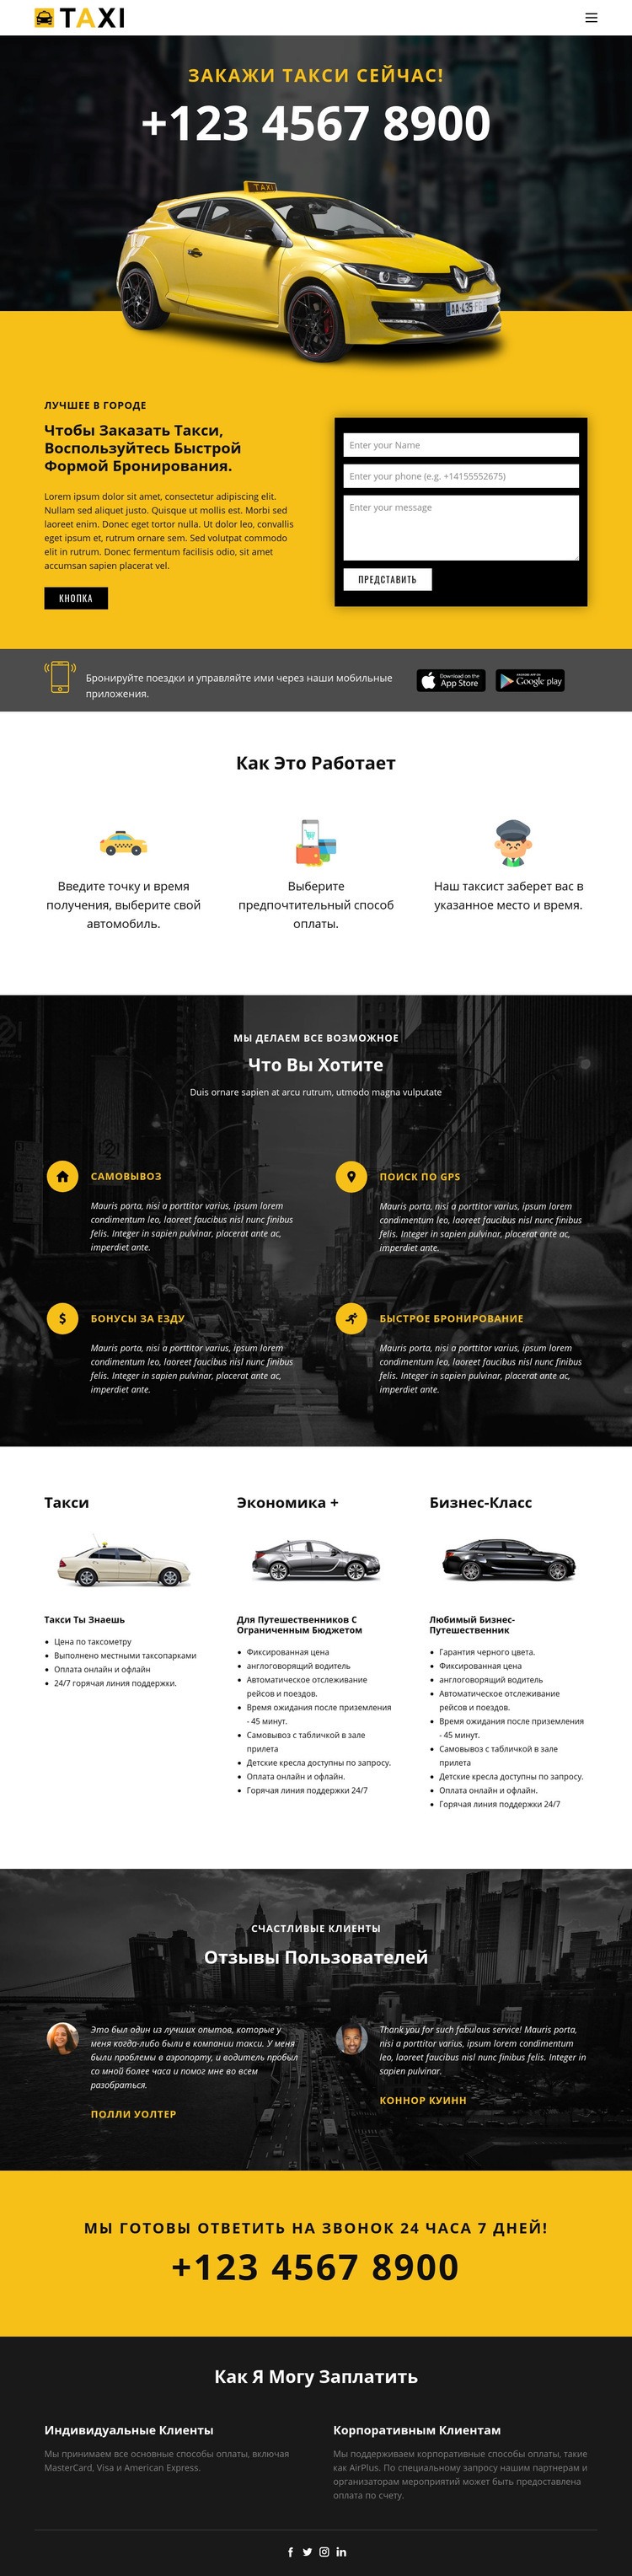 Самые быстрые машины такси Мокап веб-сайта